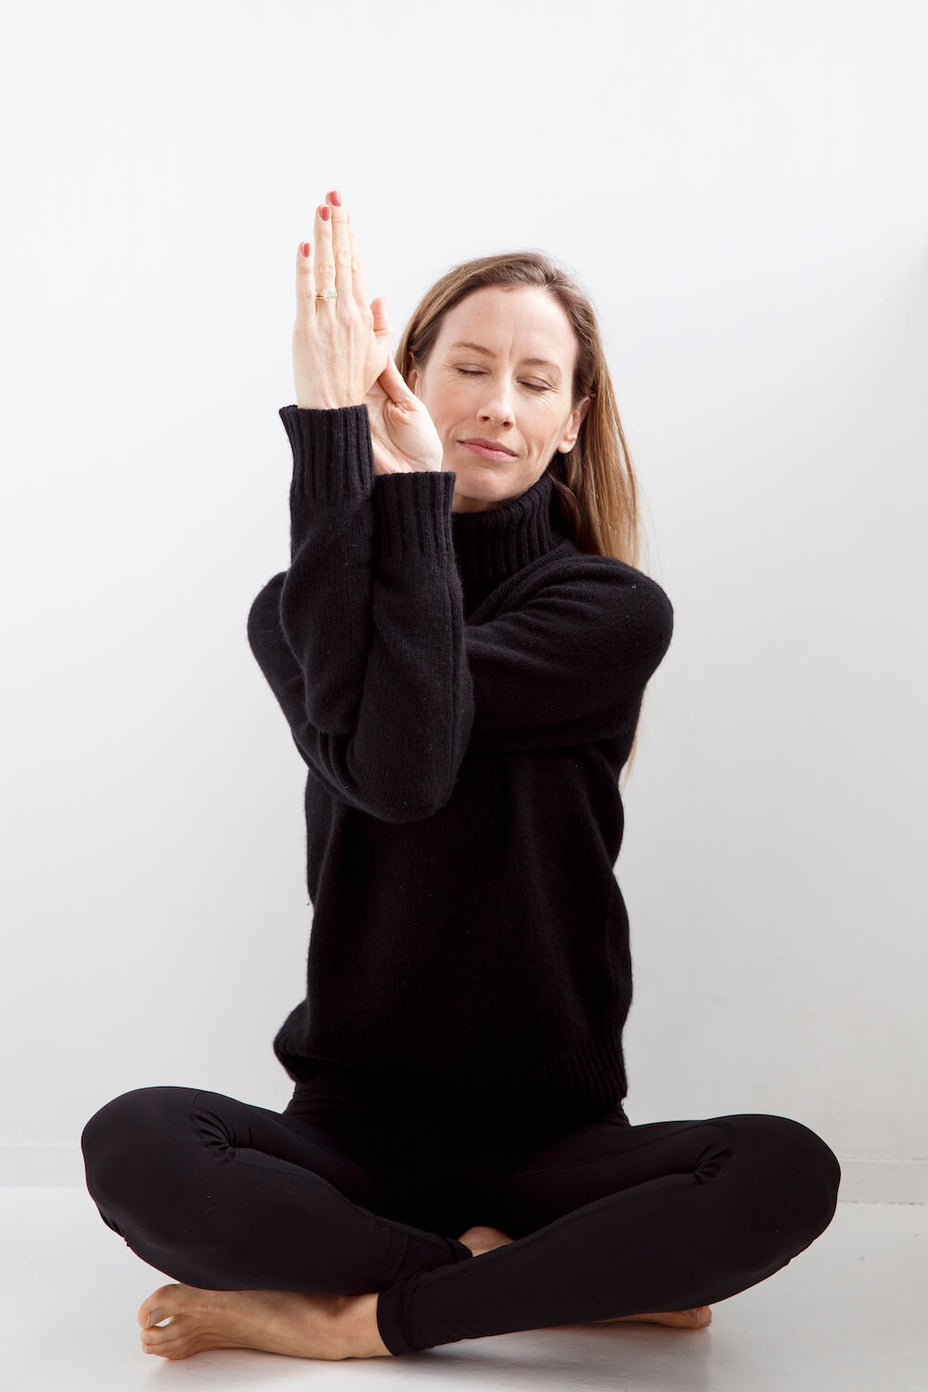 Sarah Ferguson from Yoga Online sitting crosslegged